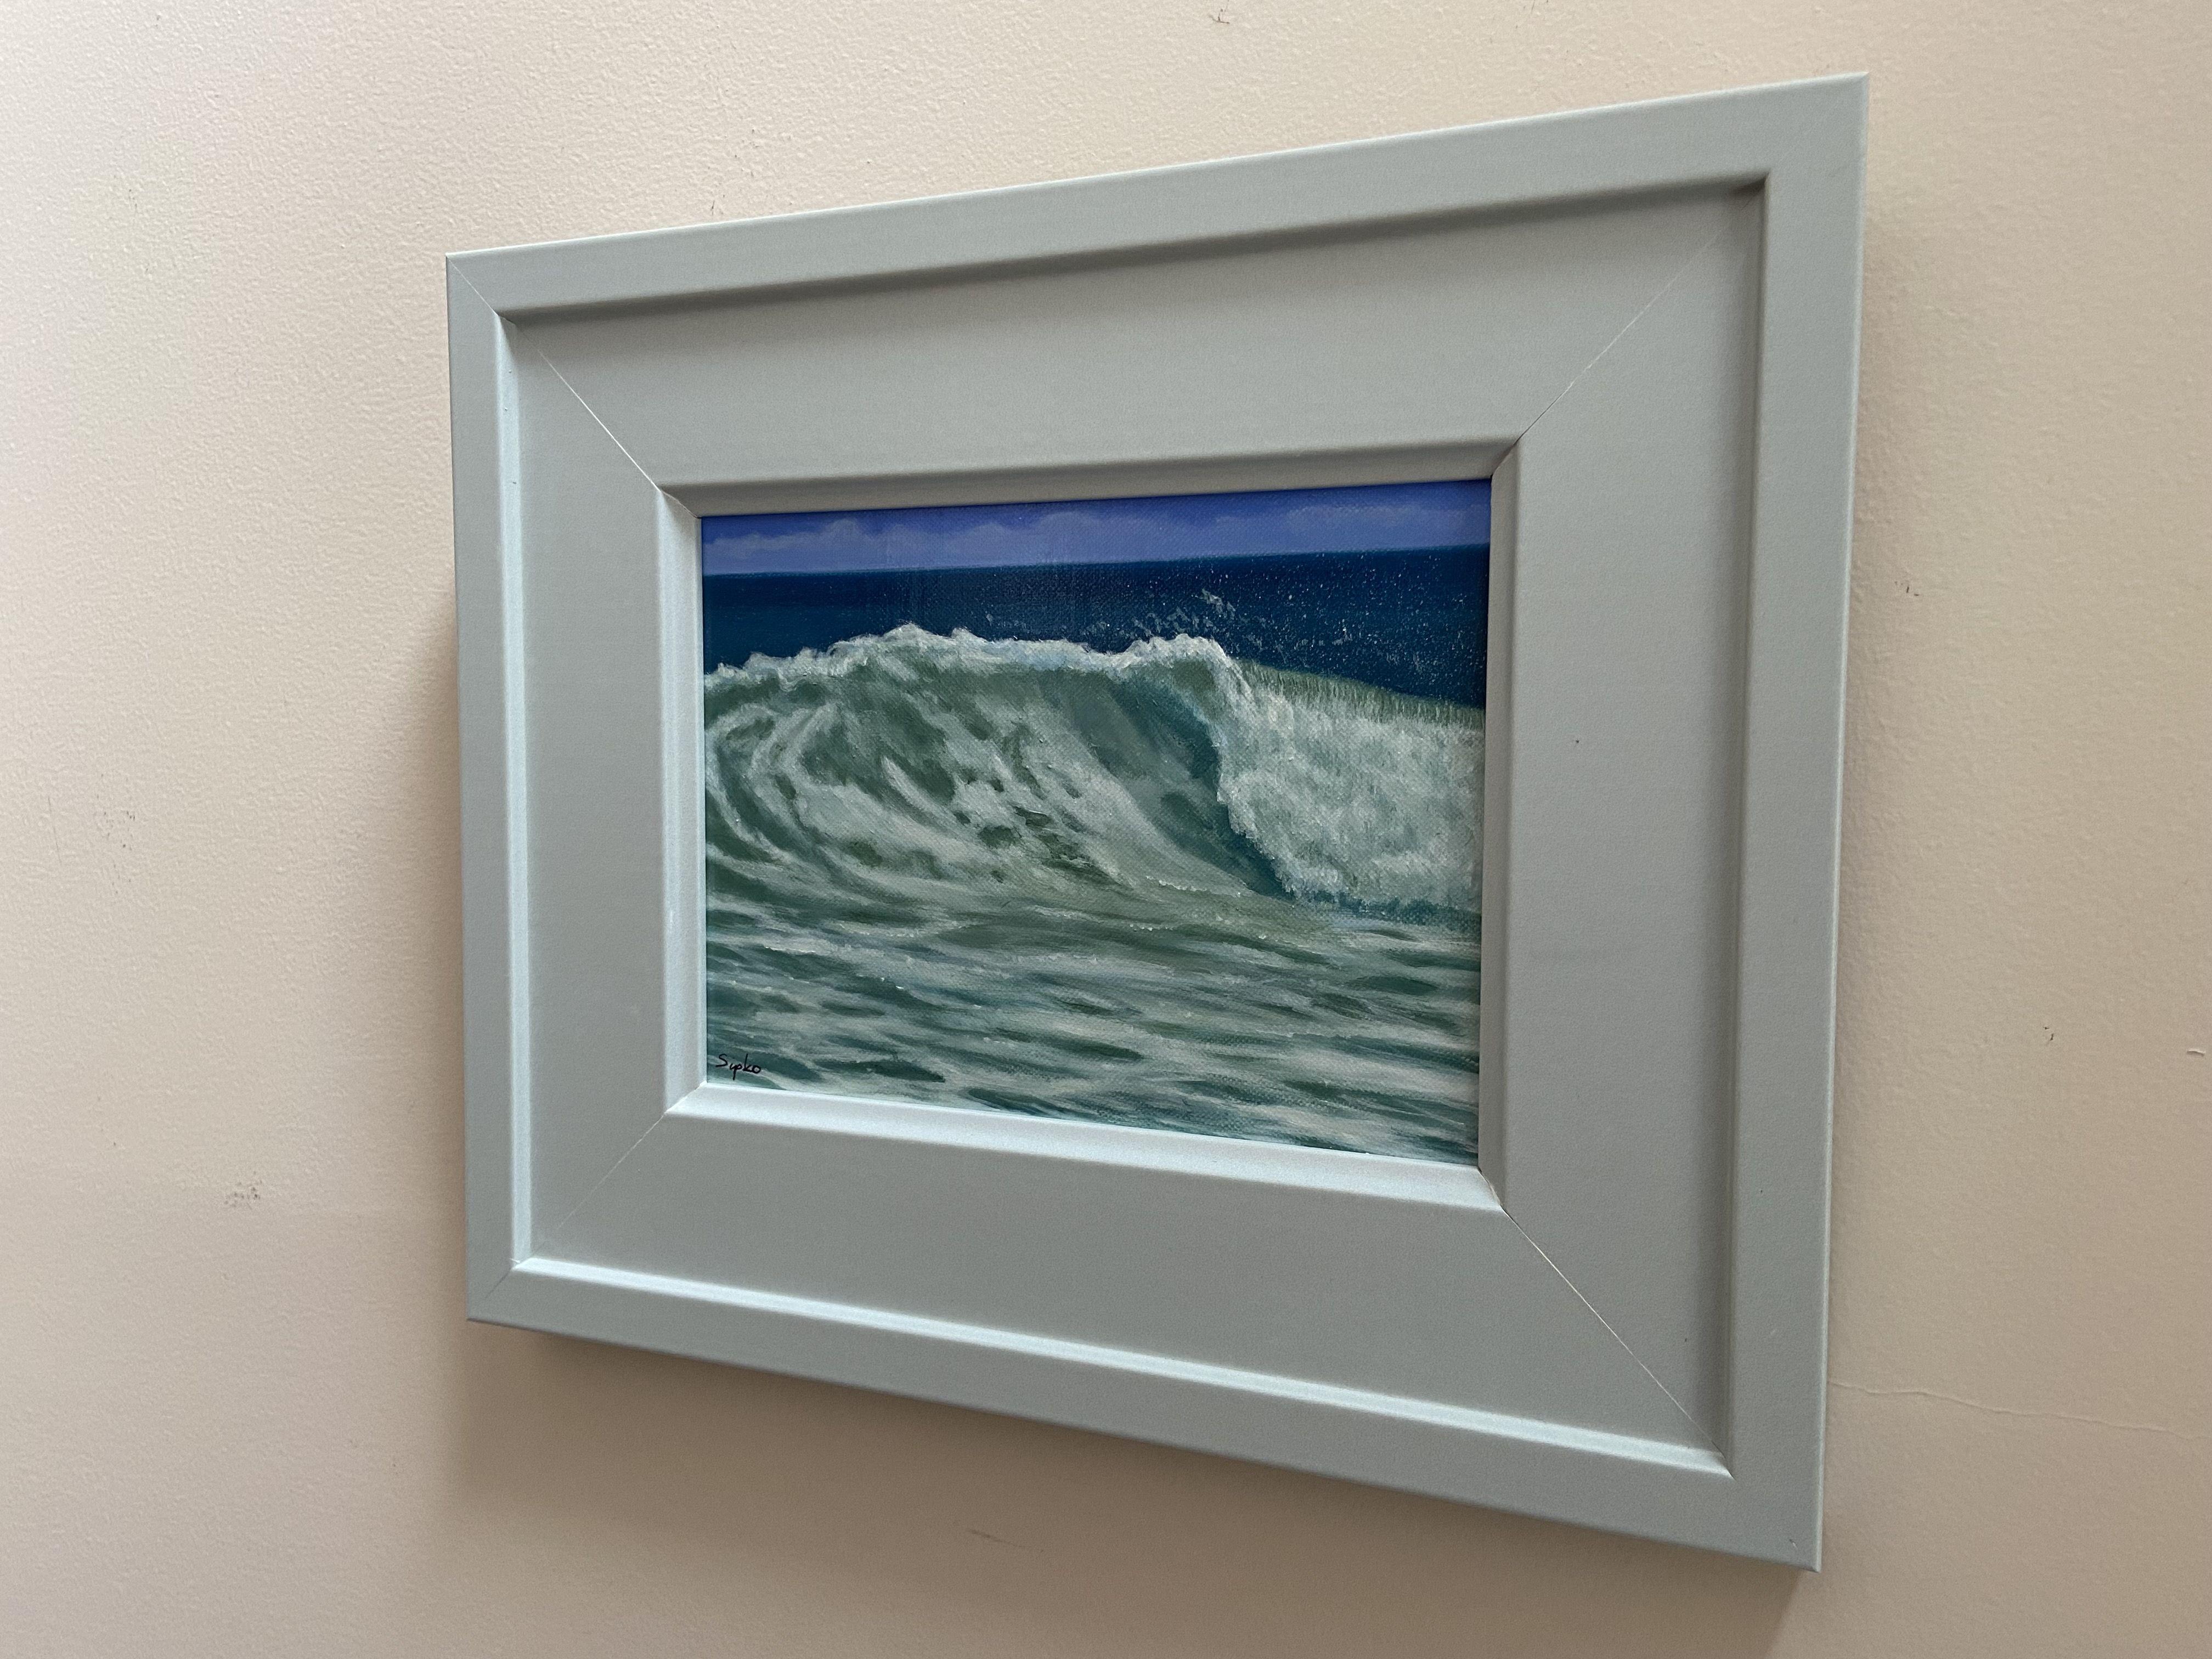 paintings of waves breaking